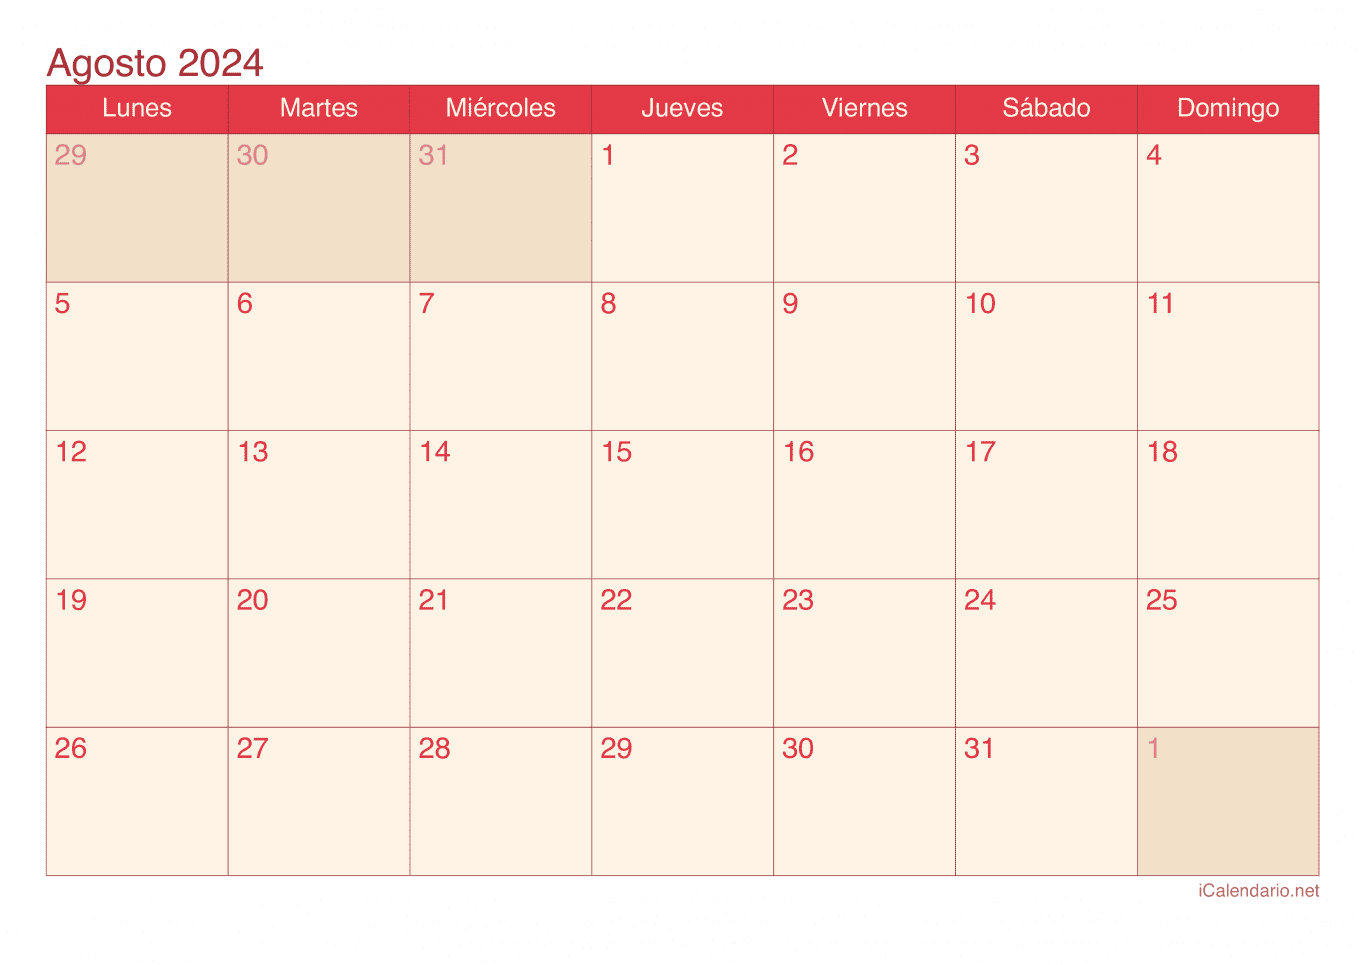 Calendario de agosto 2024 - Cherry